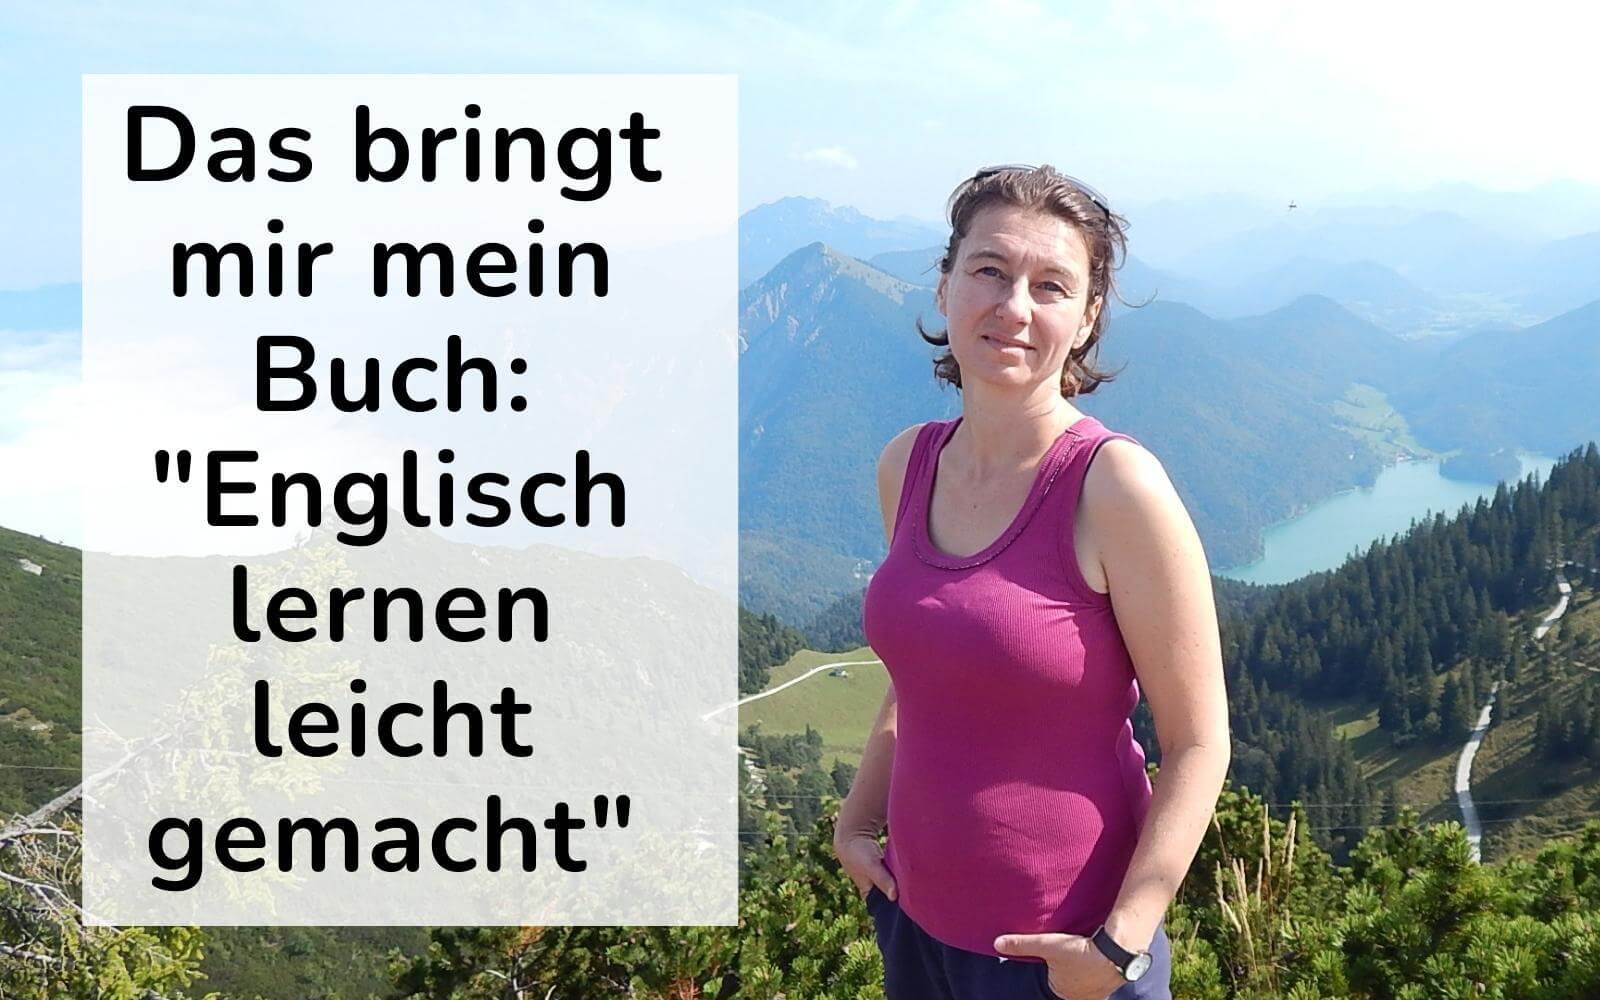 Eine Frau in pinkem Top steht vor einer Bergkulisse. Links der Text: Das bringt mir mein Buch: Englisch lernen leicht gemacht.